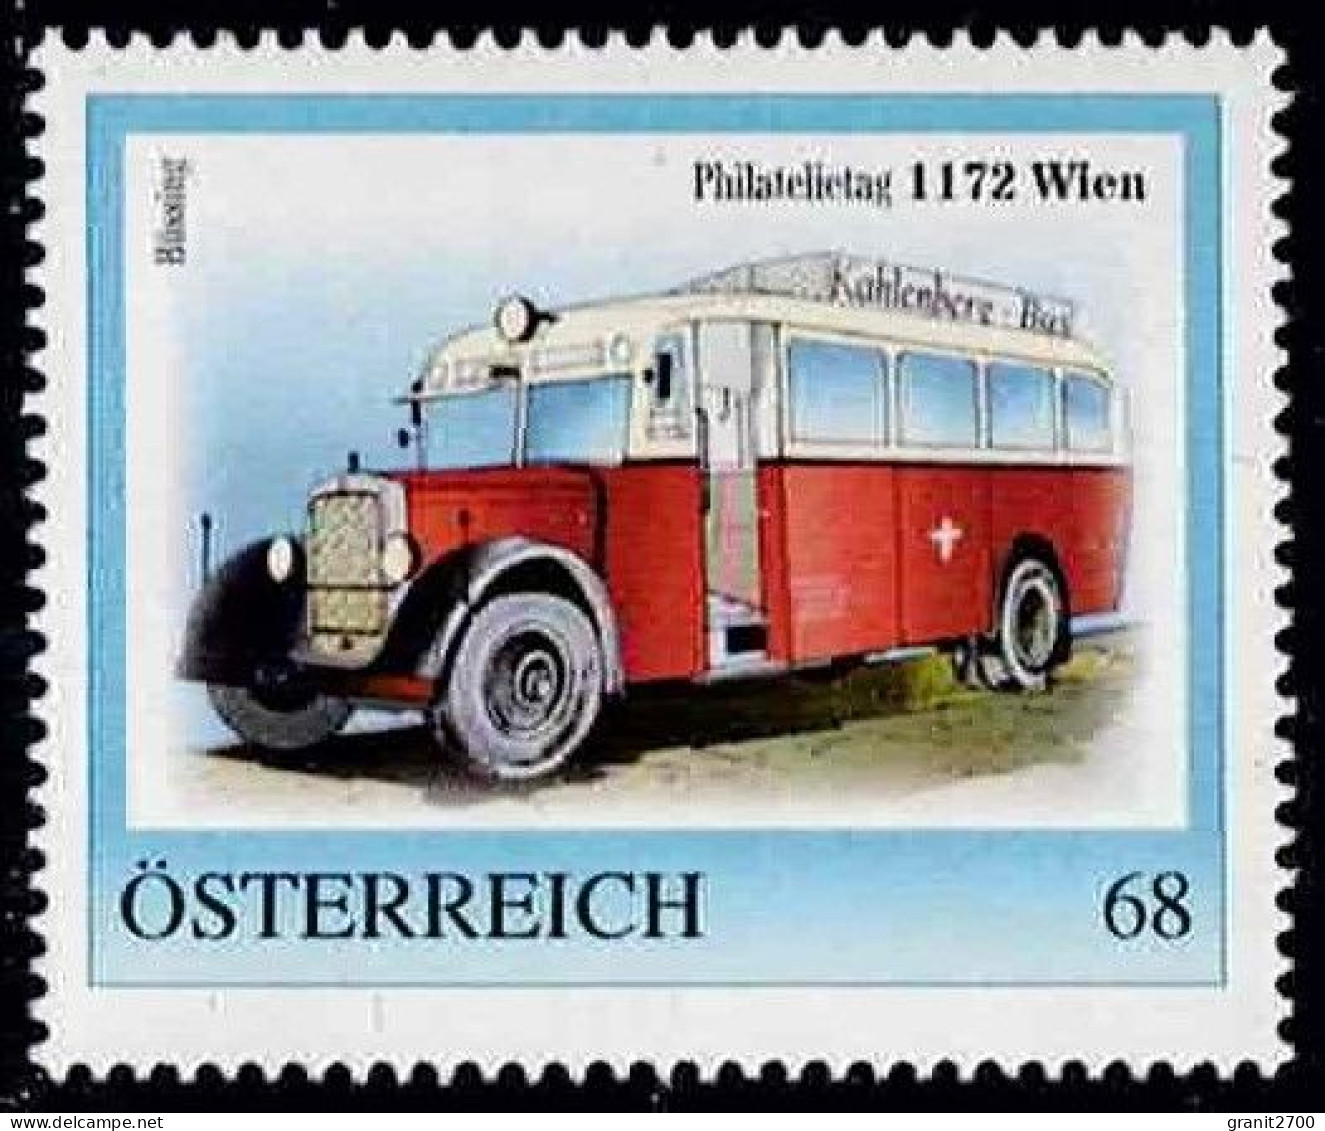 PM  Philatelietag 1172 Wien Ex Bogen Nr.  8122525  Vom 16.5.2017 Postfrisch - Personalisierte Briefmarken